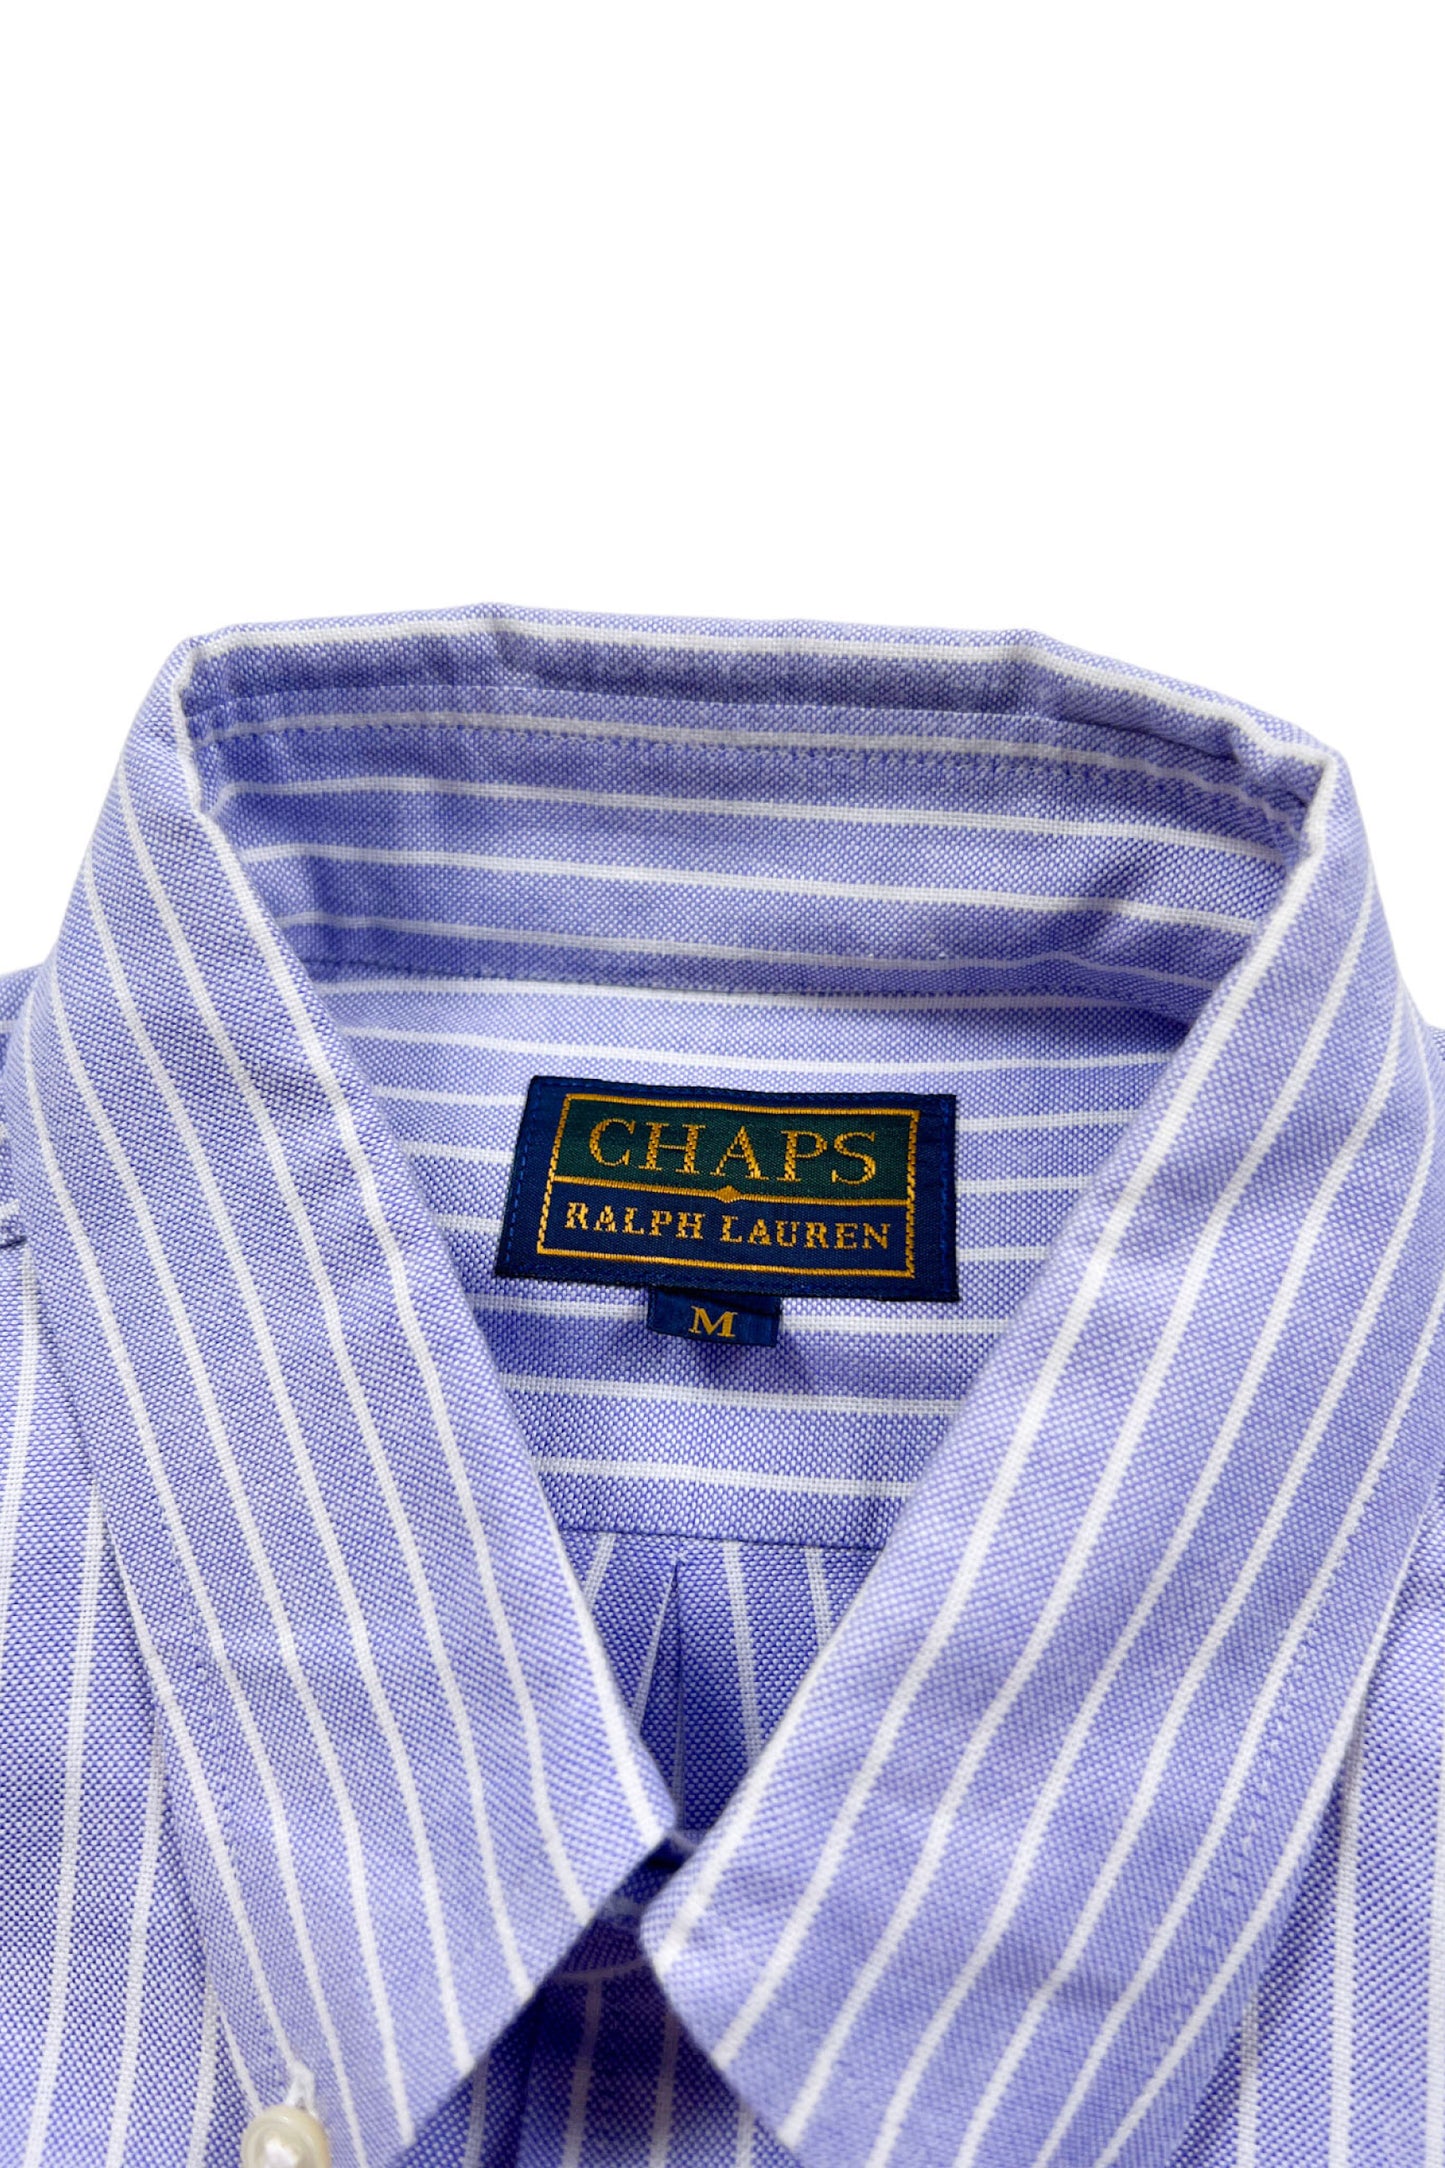 90‘s CHAPS Ralph Lauren stripe shirt